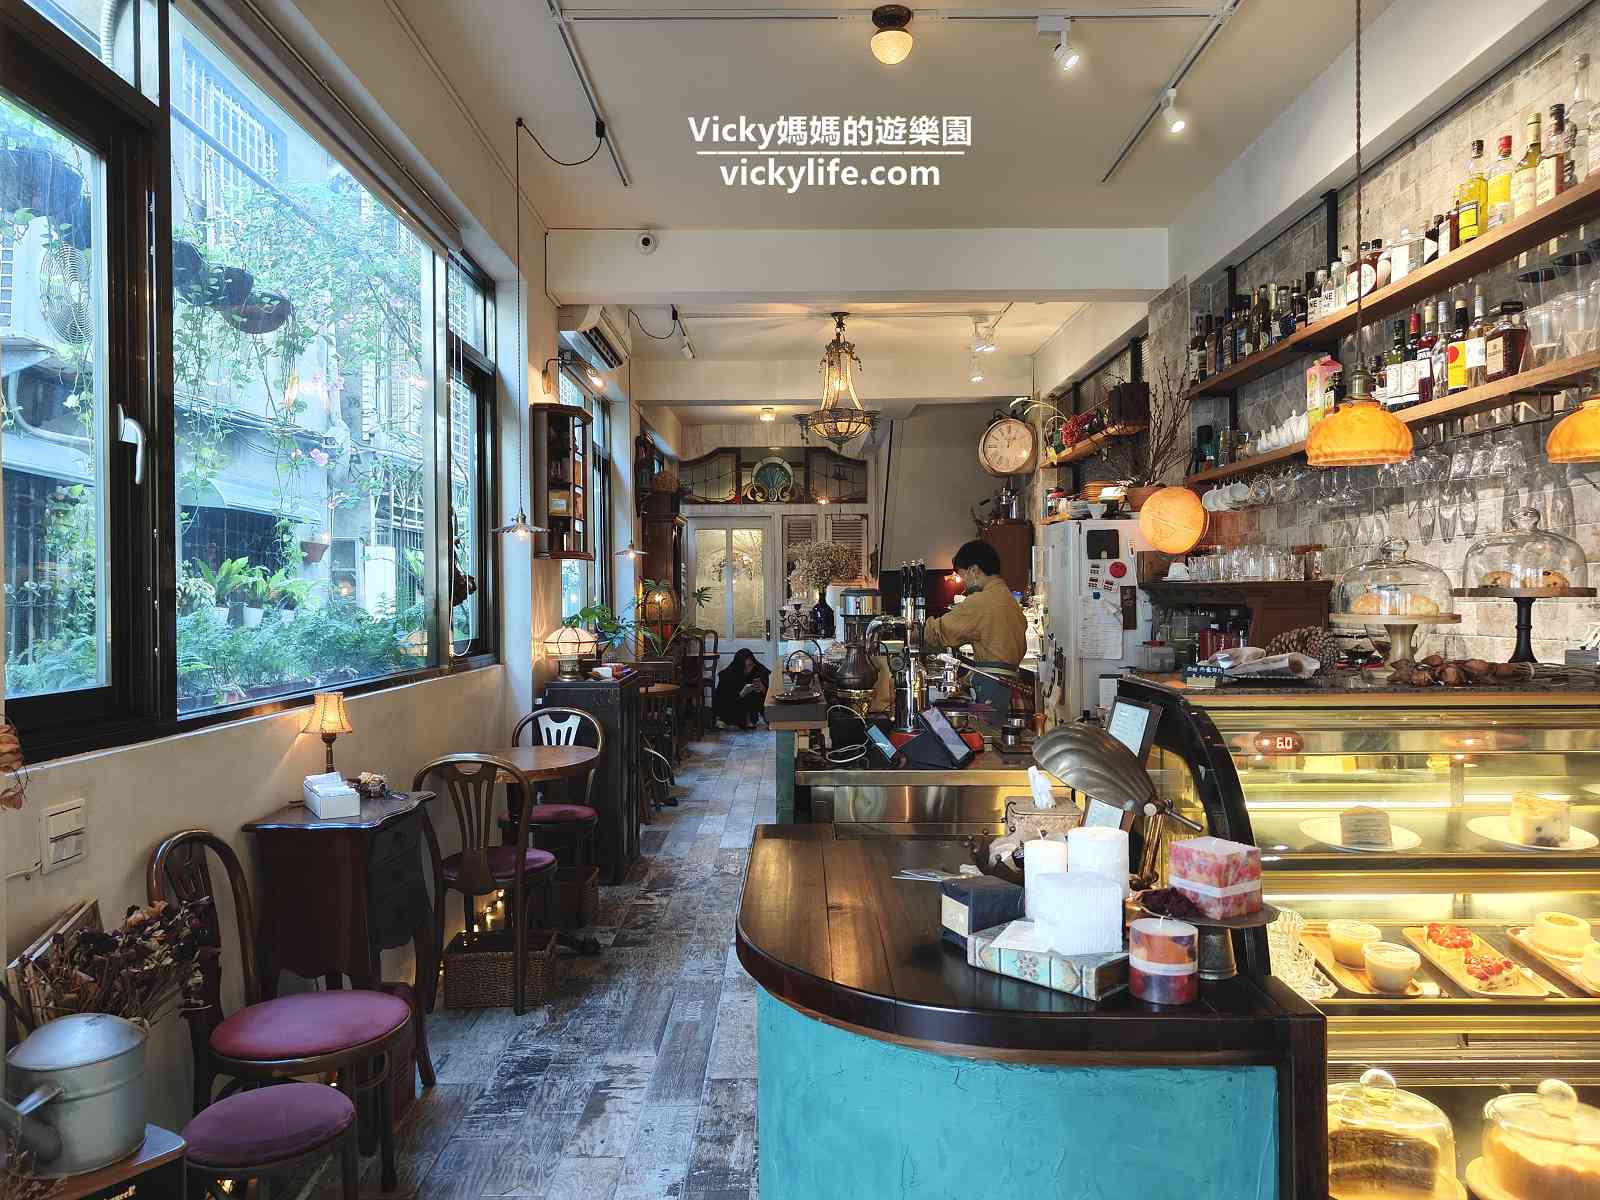 台南甜點︱The Fifth Taste(菜單)：台南市立體育場附近的歐風咖啡館，一秒到歐洲享用甜點和午茶